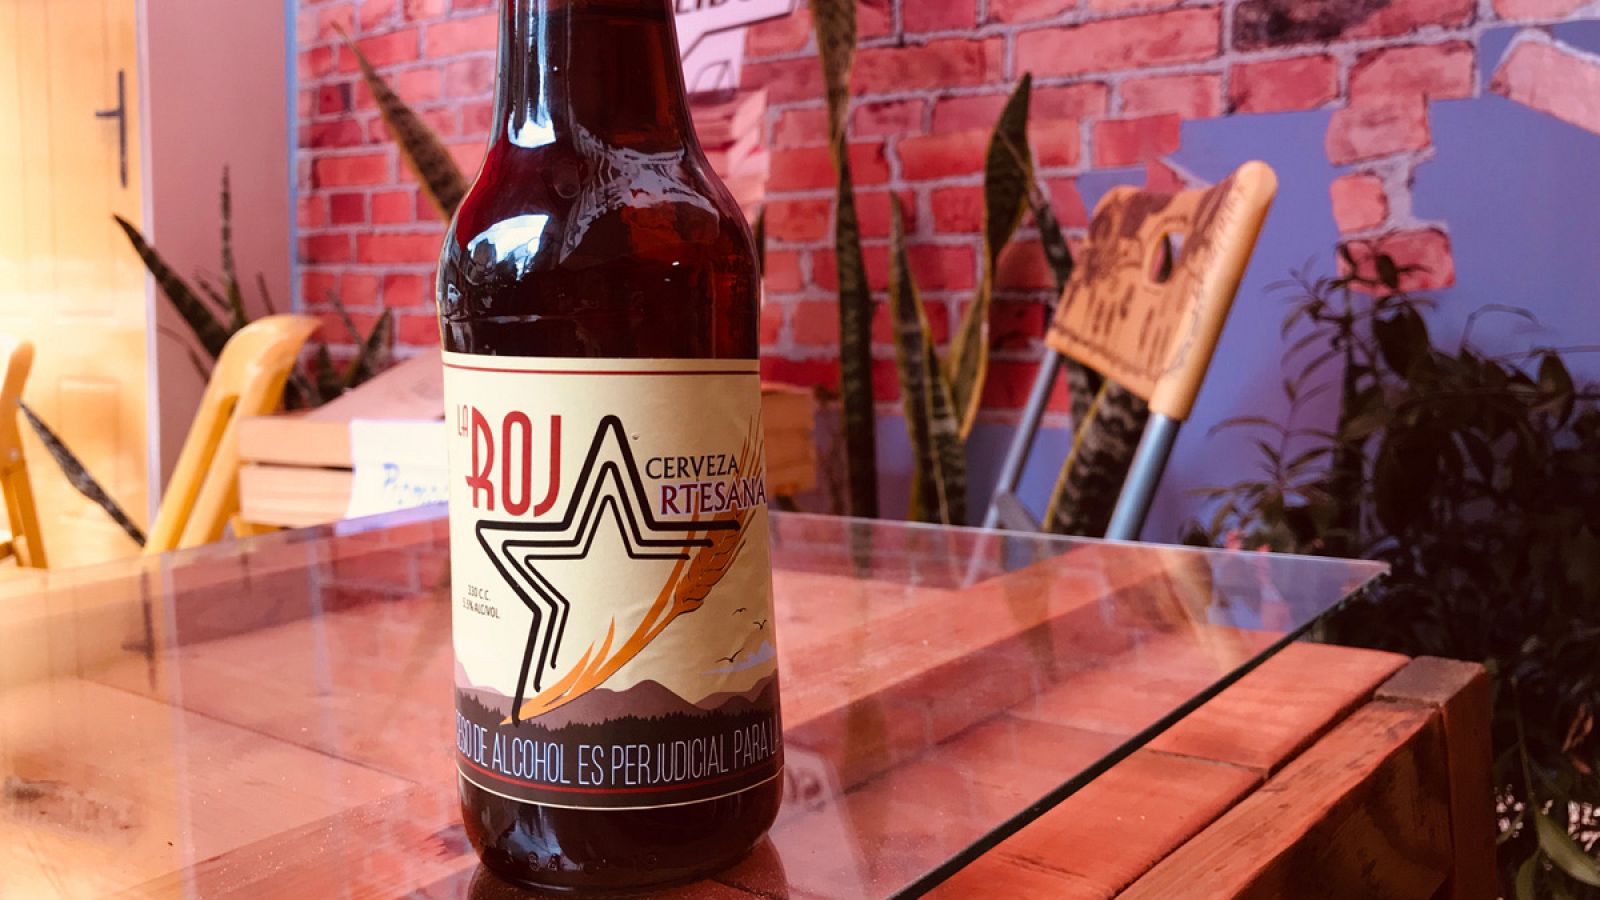 La cerveza La Roja, el producto estrella de un café regentado por un exguerrillero de las FARC